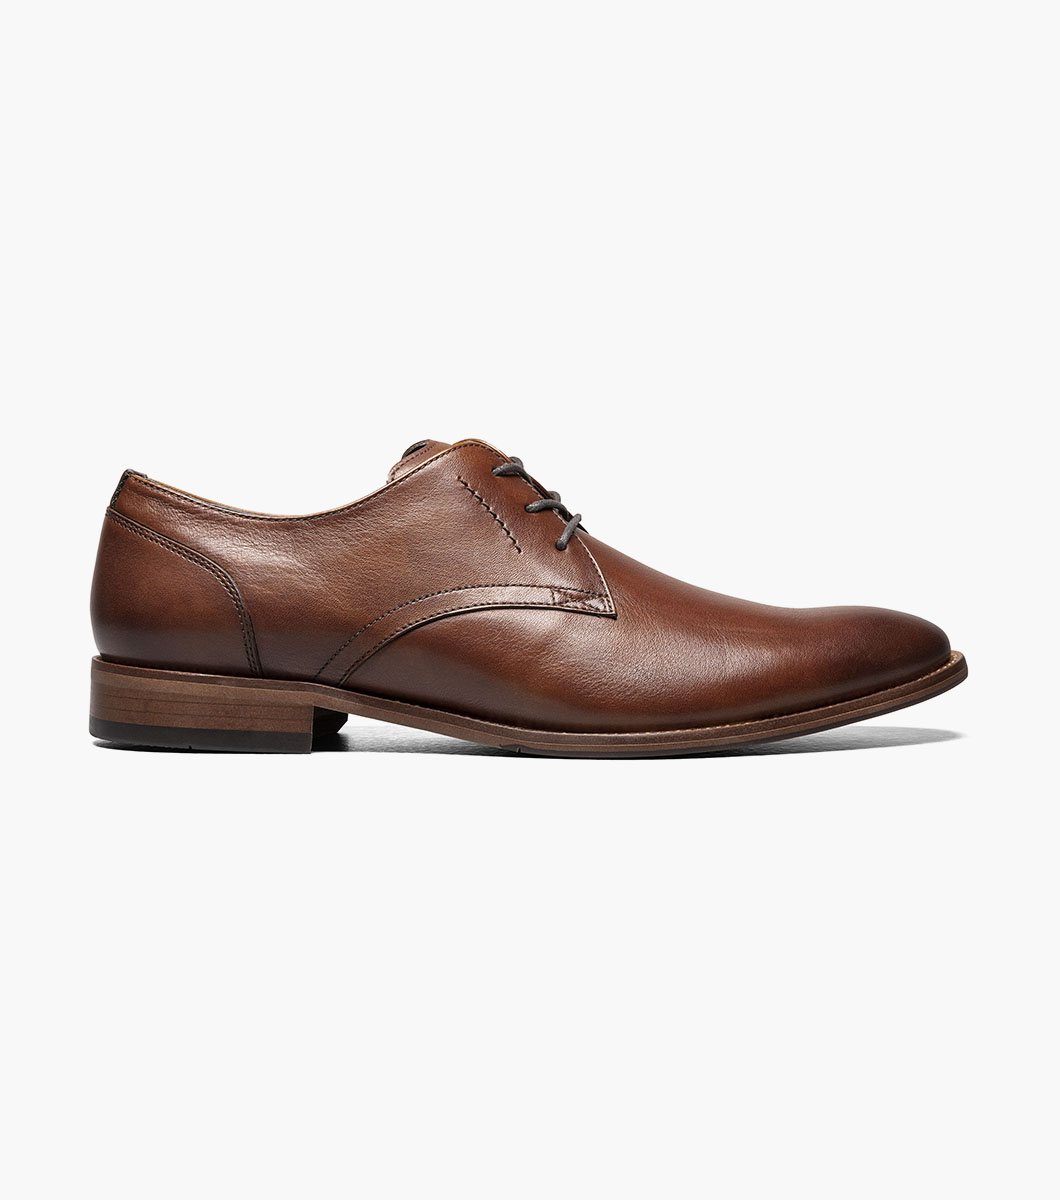 Flex Plain Toe Oxford Men’s Dress Shoes | Florsheim.com